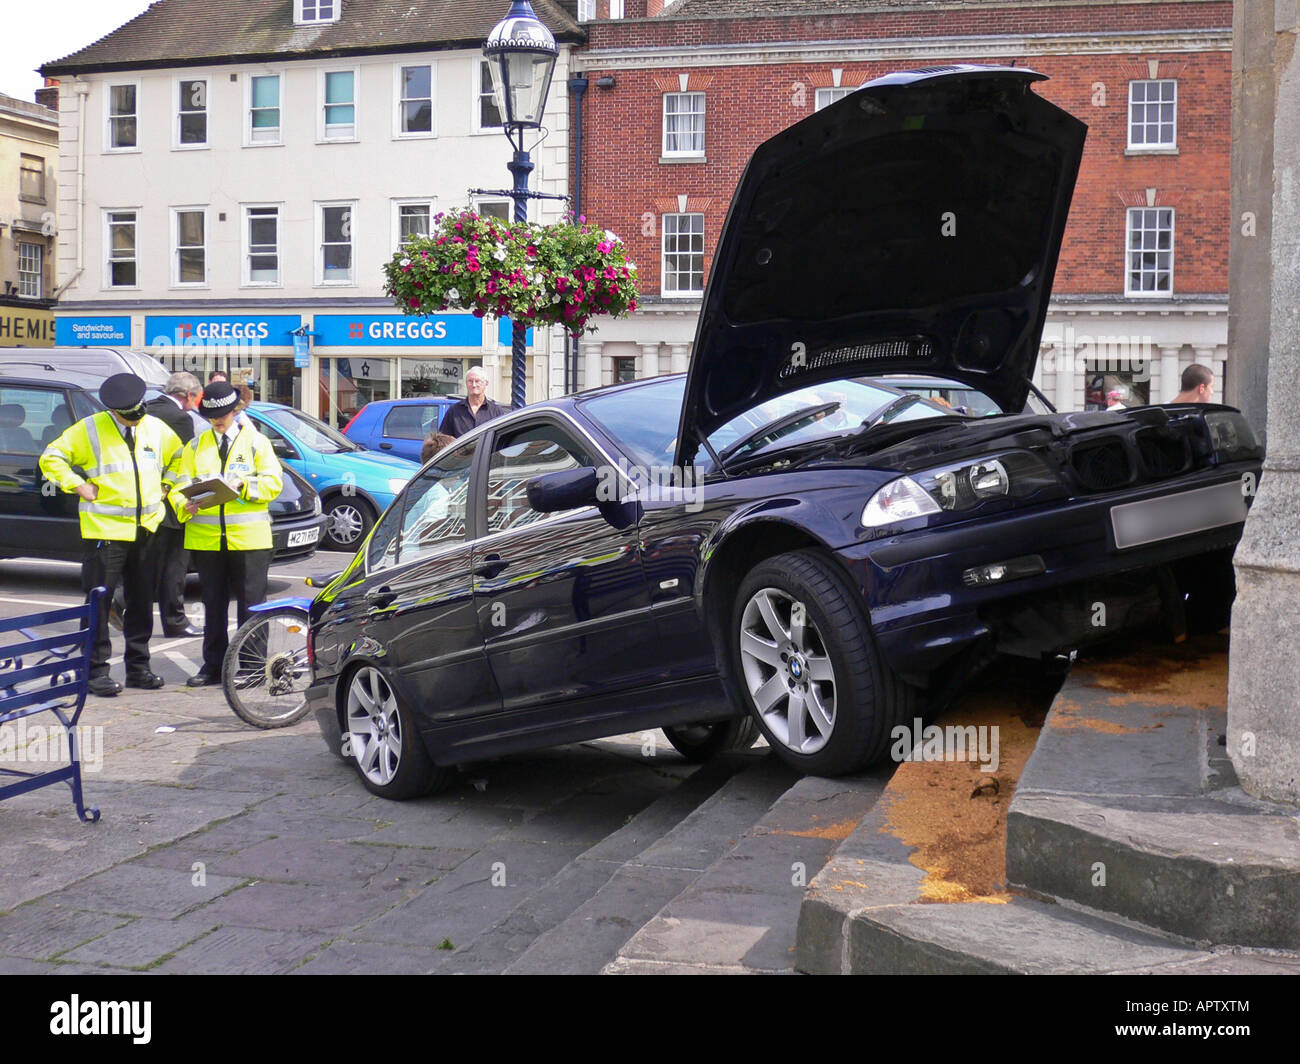 Voiture BMW s'est écrasé à Devizes Wiltshire UK UE Place du Marché Banque D'Images